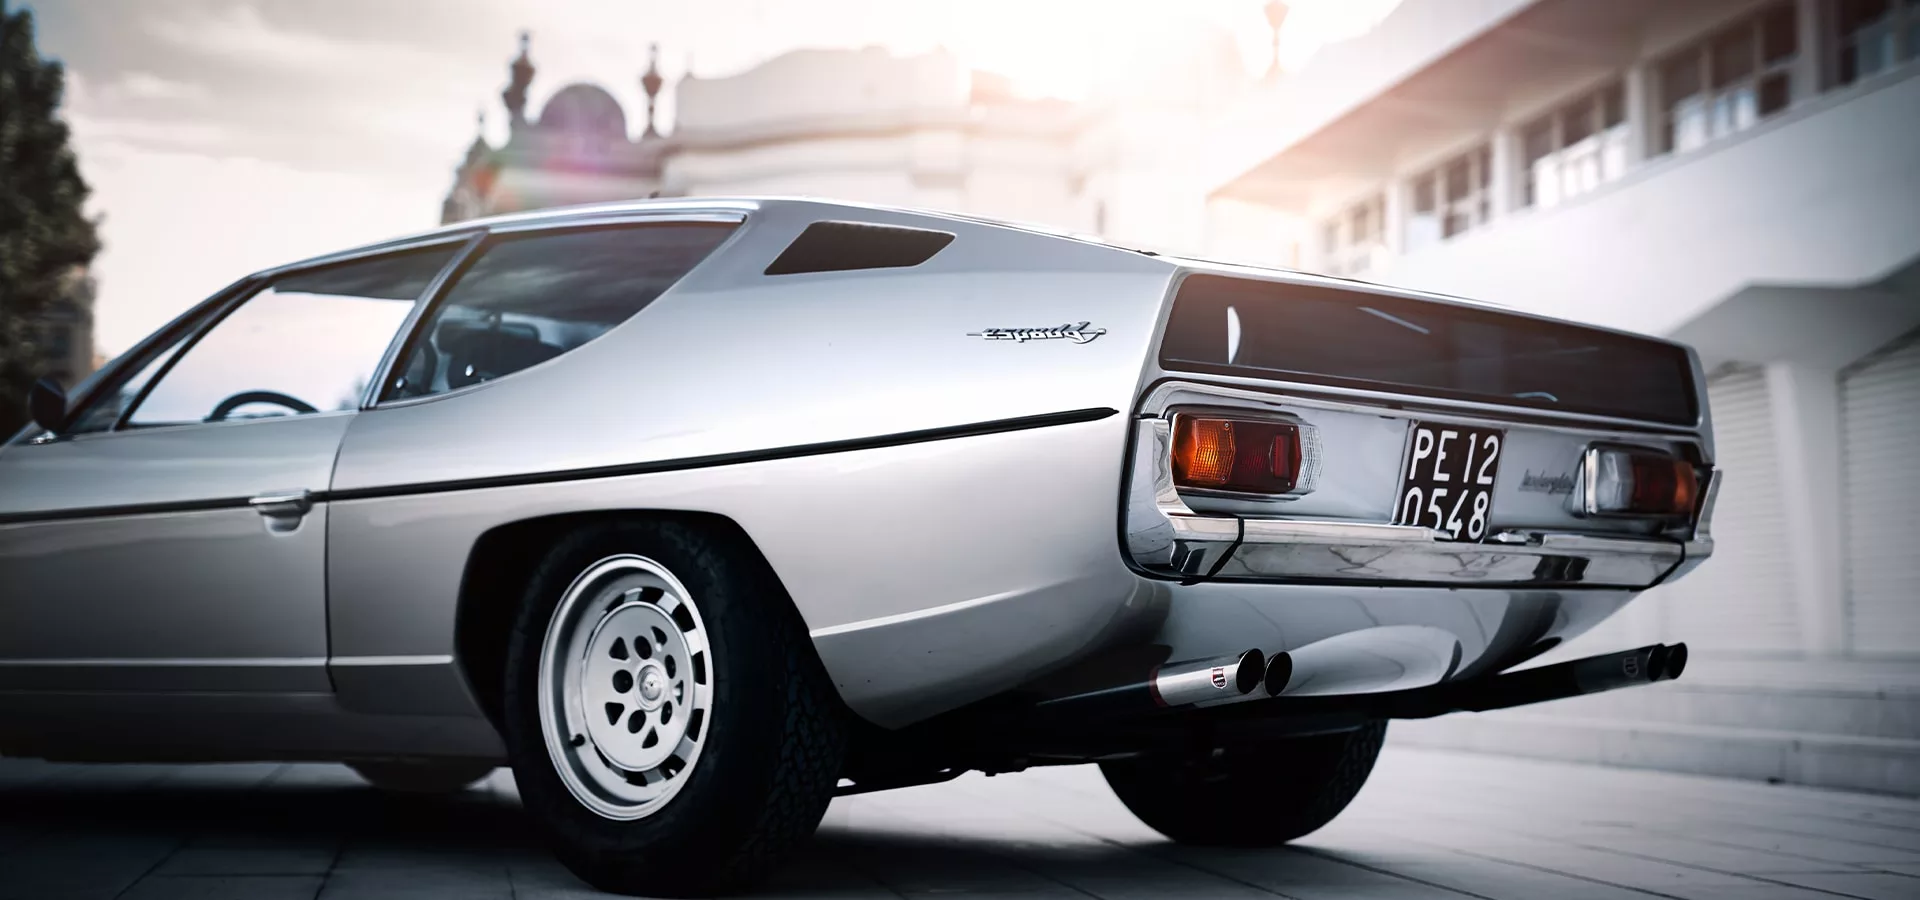 , A découvrir cet édito : Lamborghini Espada 400 GT, la première Lamborghini à quatre places